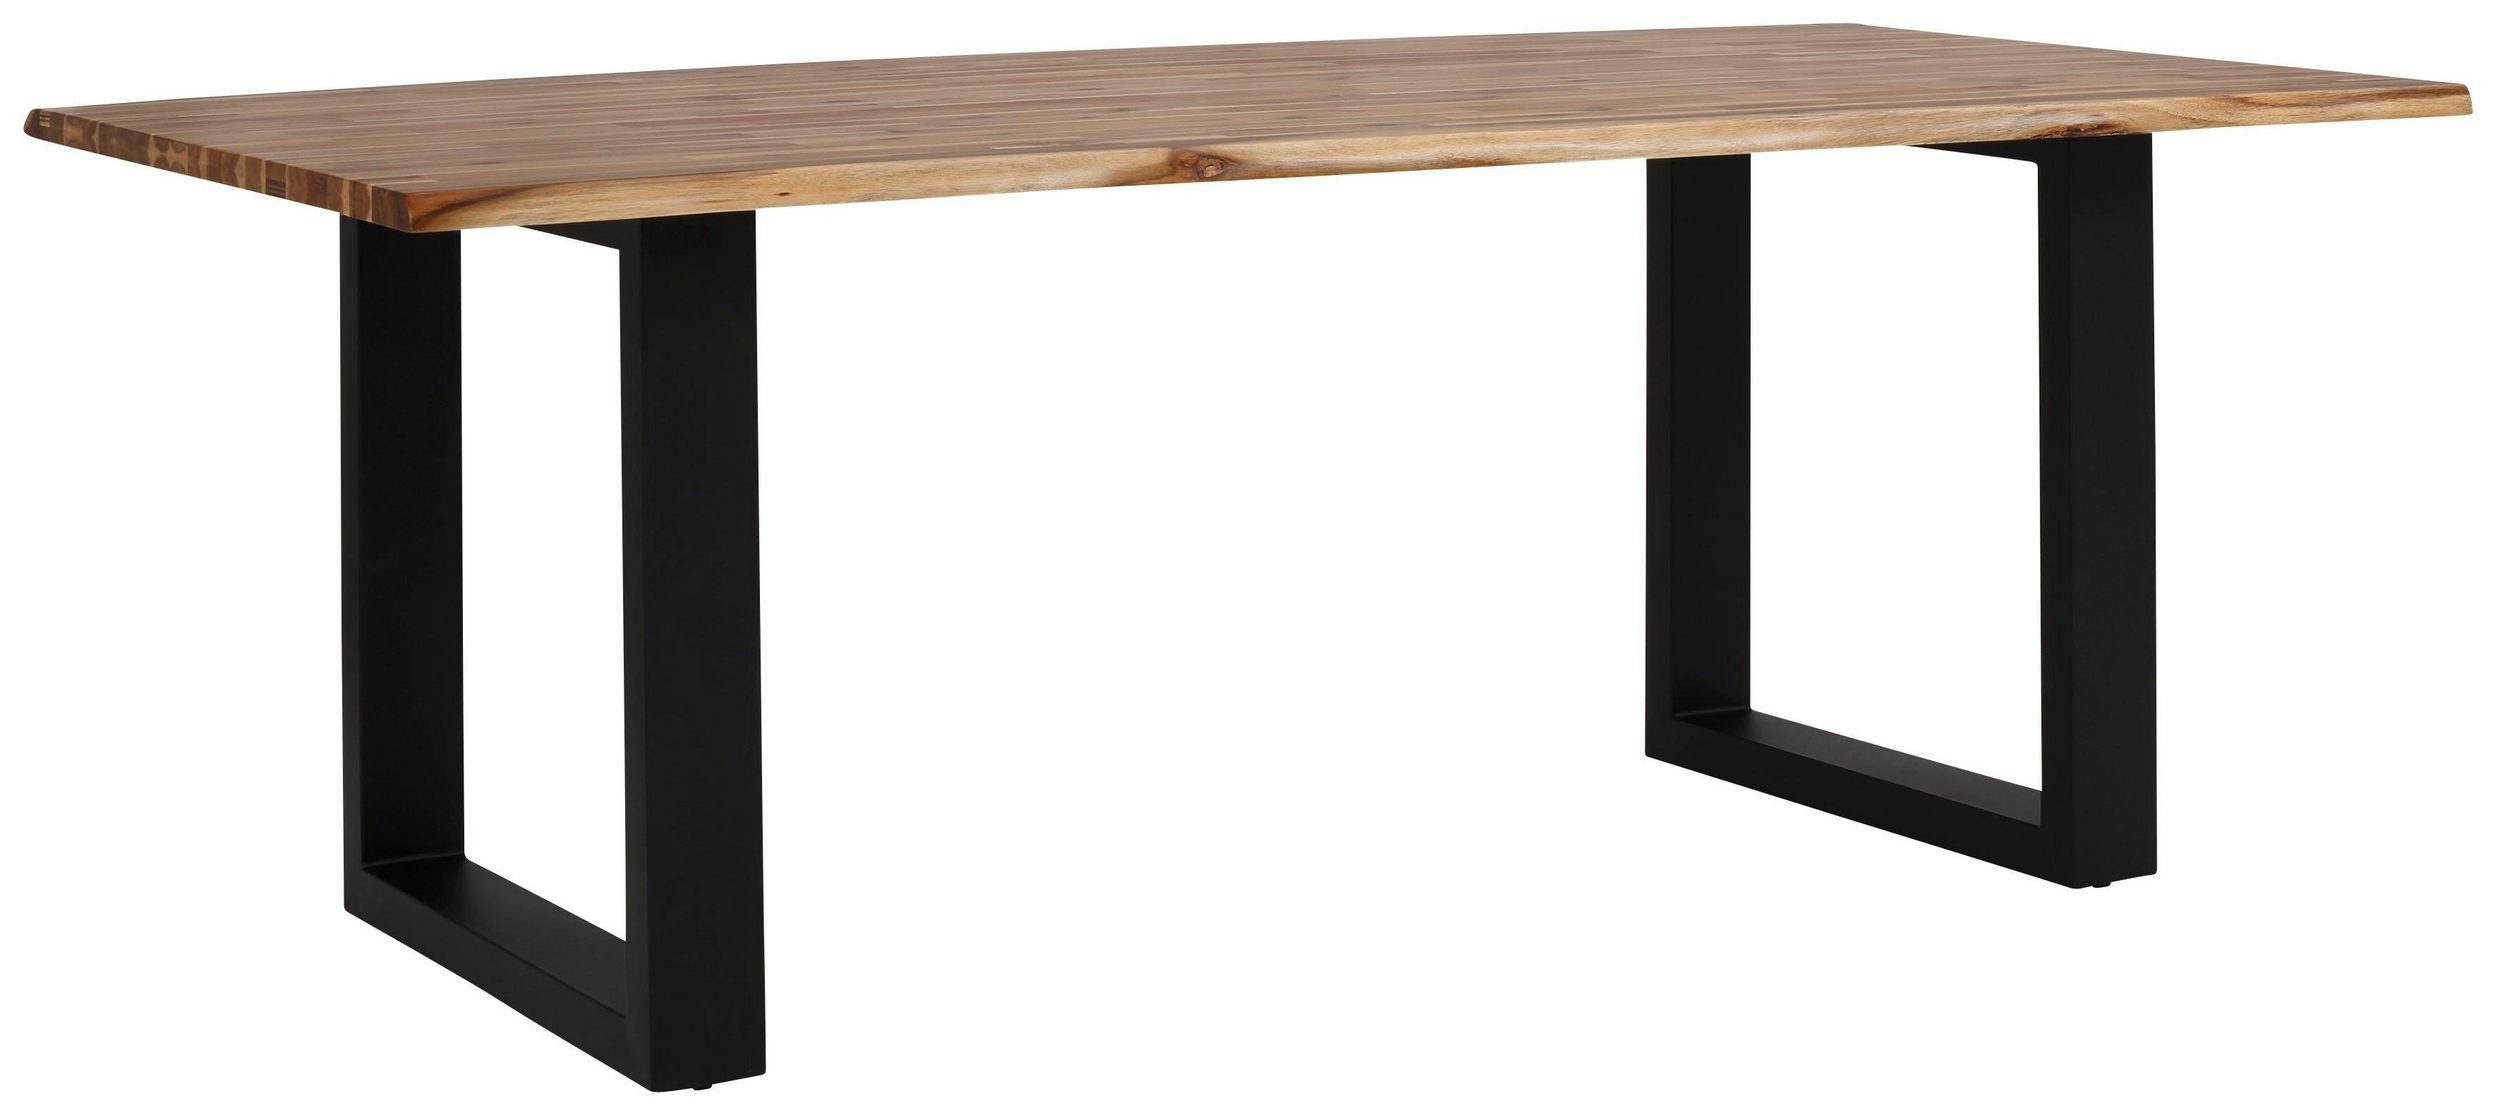 loft24 Esstisch Mangani, Tischplatte aus Akazie in Baumkanten Look, Kufengestell aus Metall schwarz